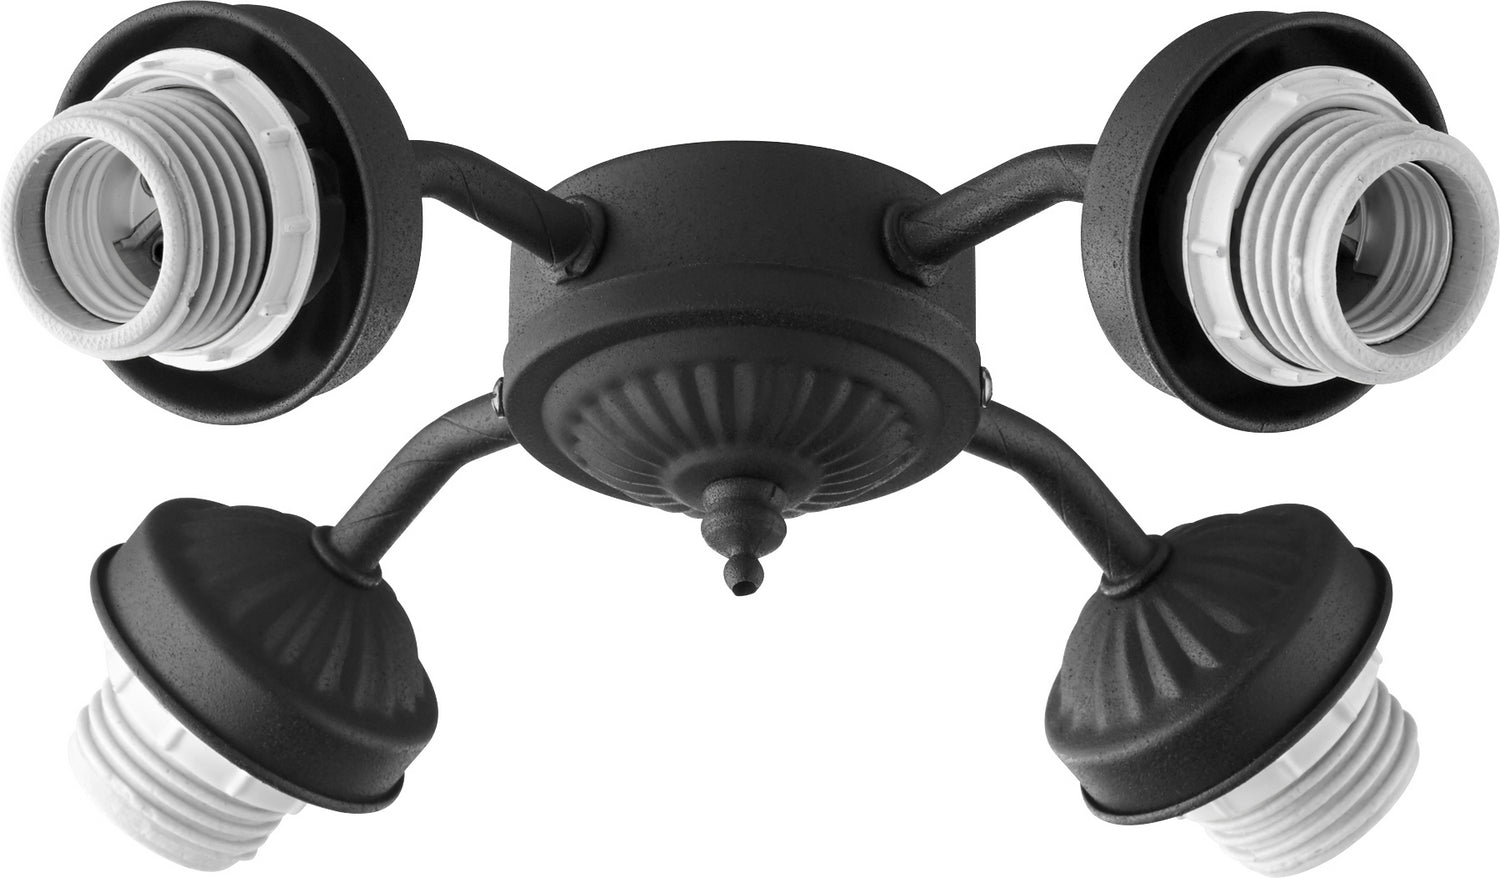 Quorum - 2444-8069 - LED Fan Light Kit - 2444 Light Kits - Textured Black